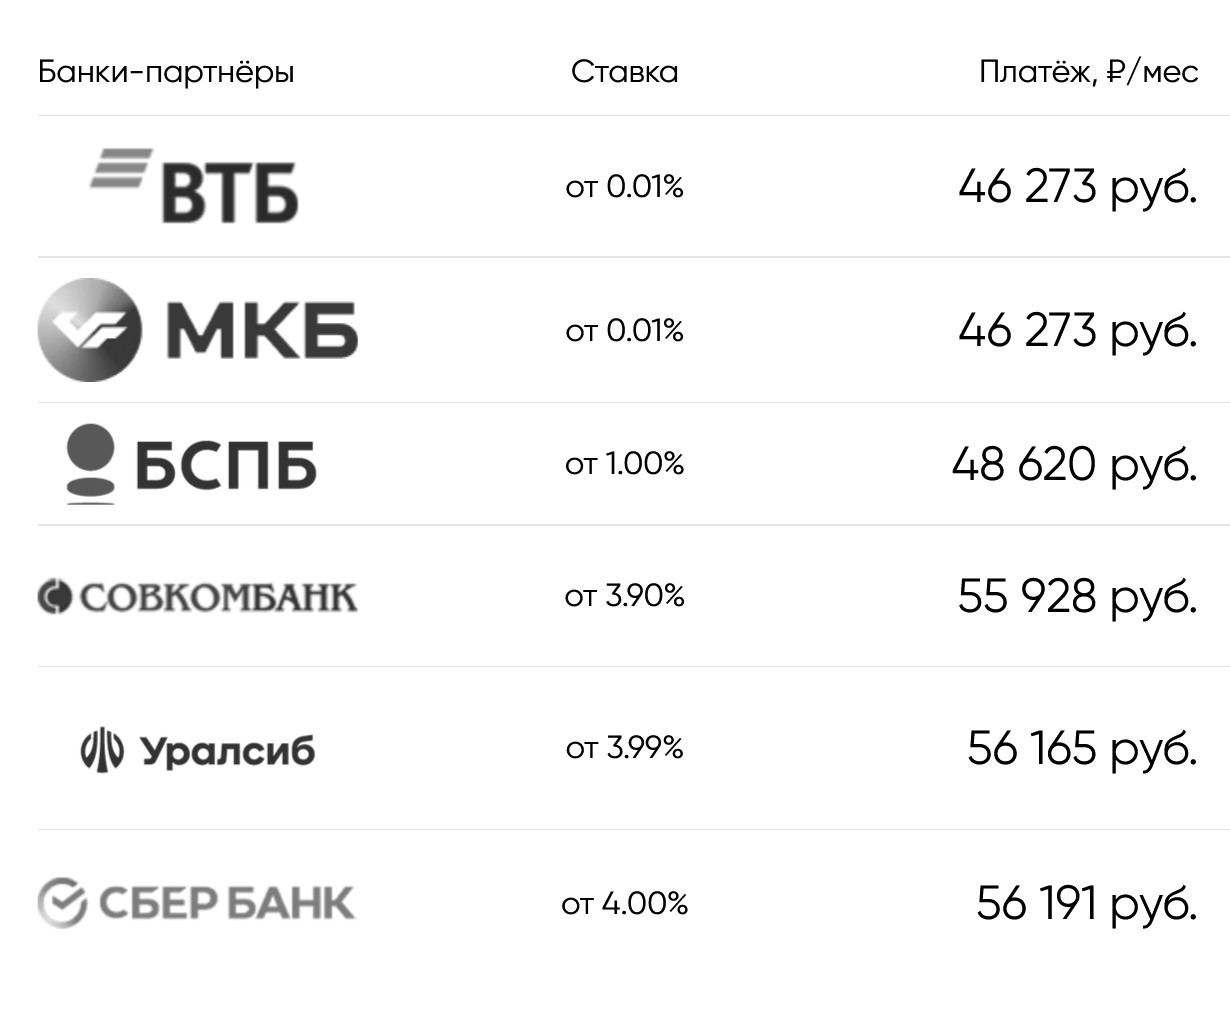 Минимальные ставки от 0,01% девелопер предлагает с банками «ВТБ» и «МКБ», 1% с Санкт-Петербургом. Источник: etalongroup.ru